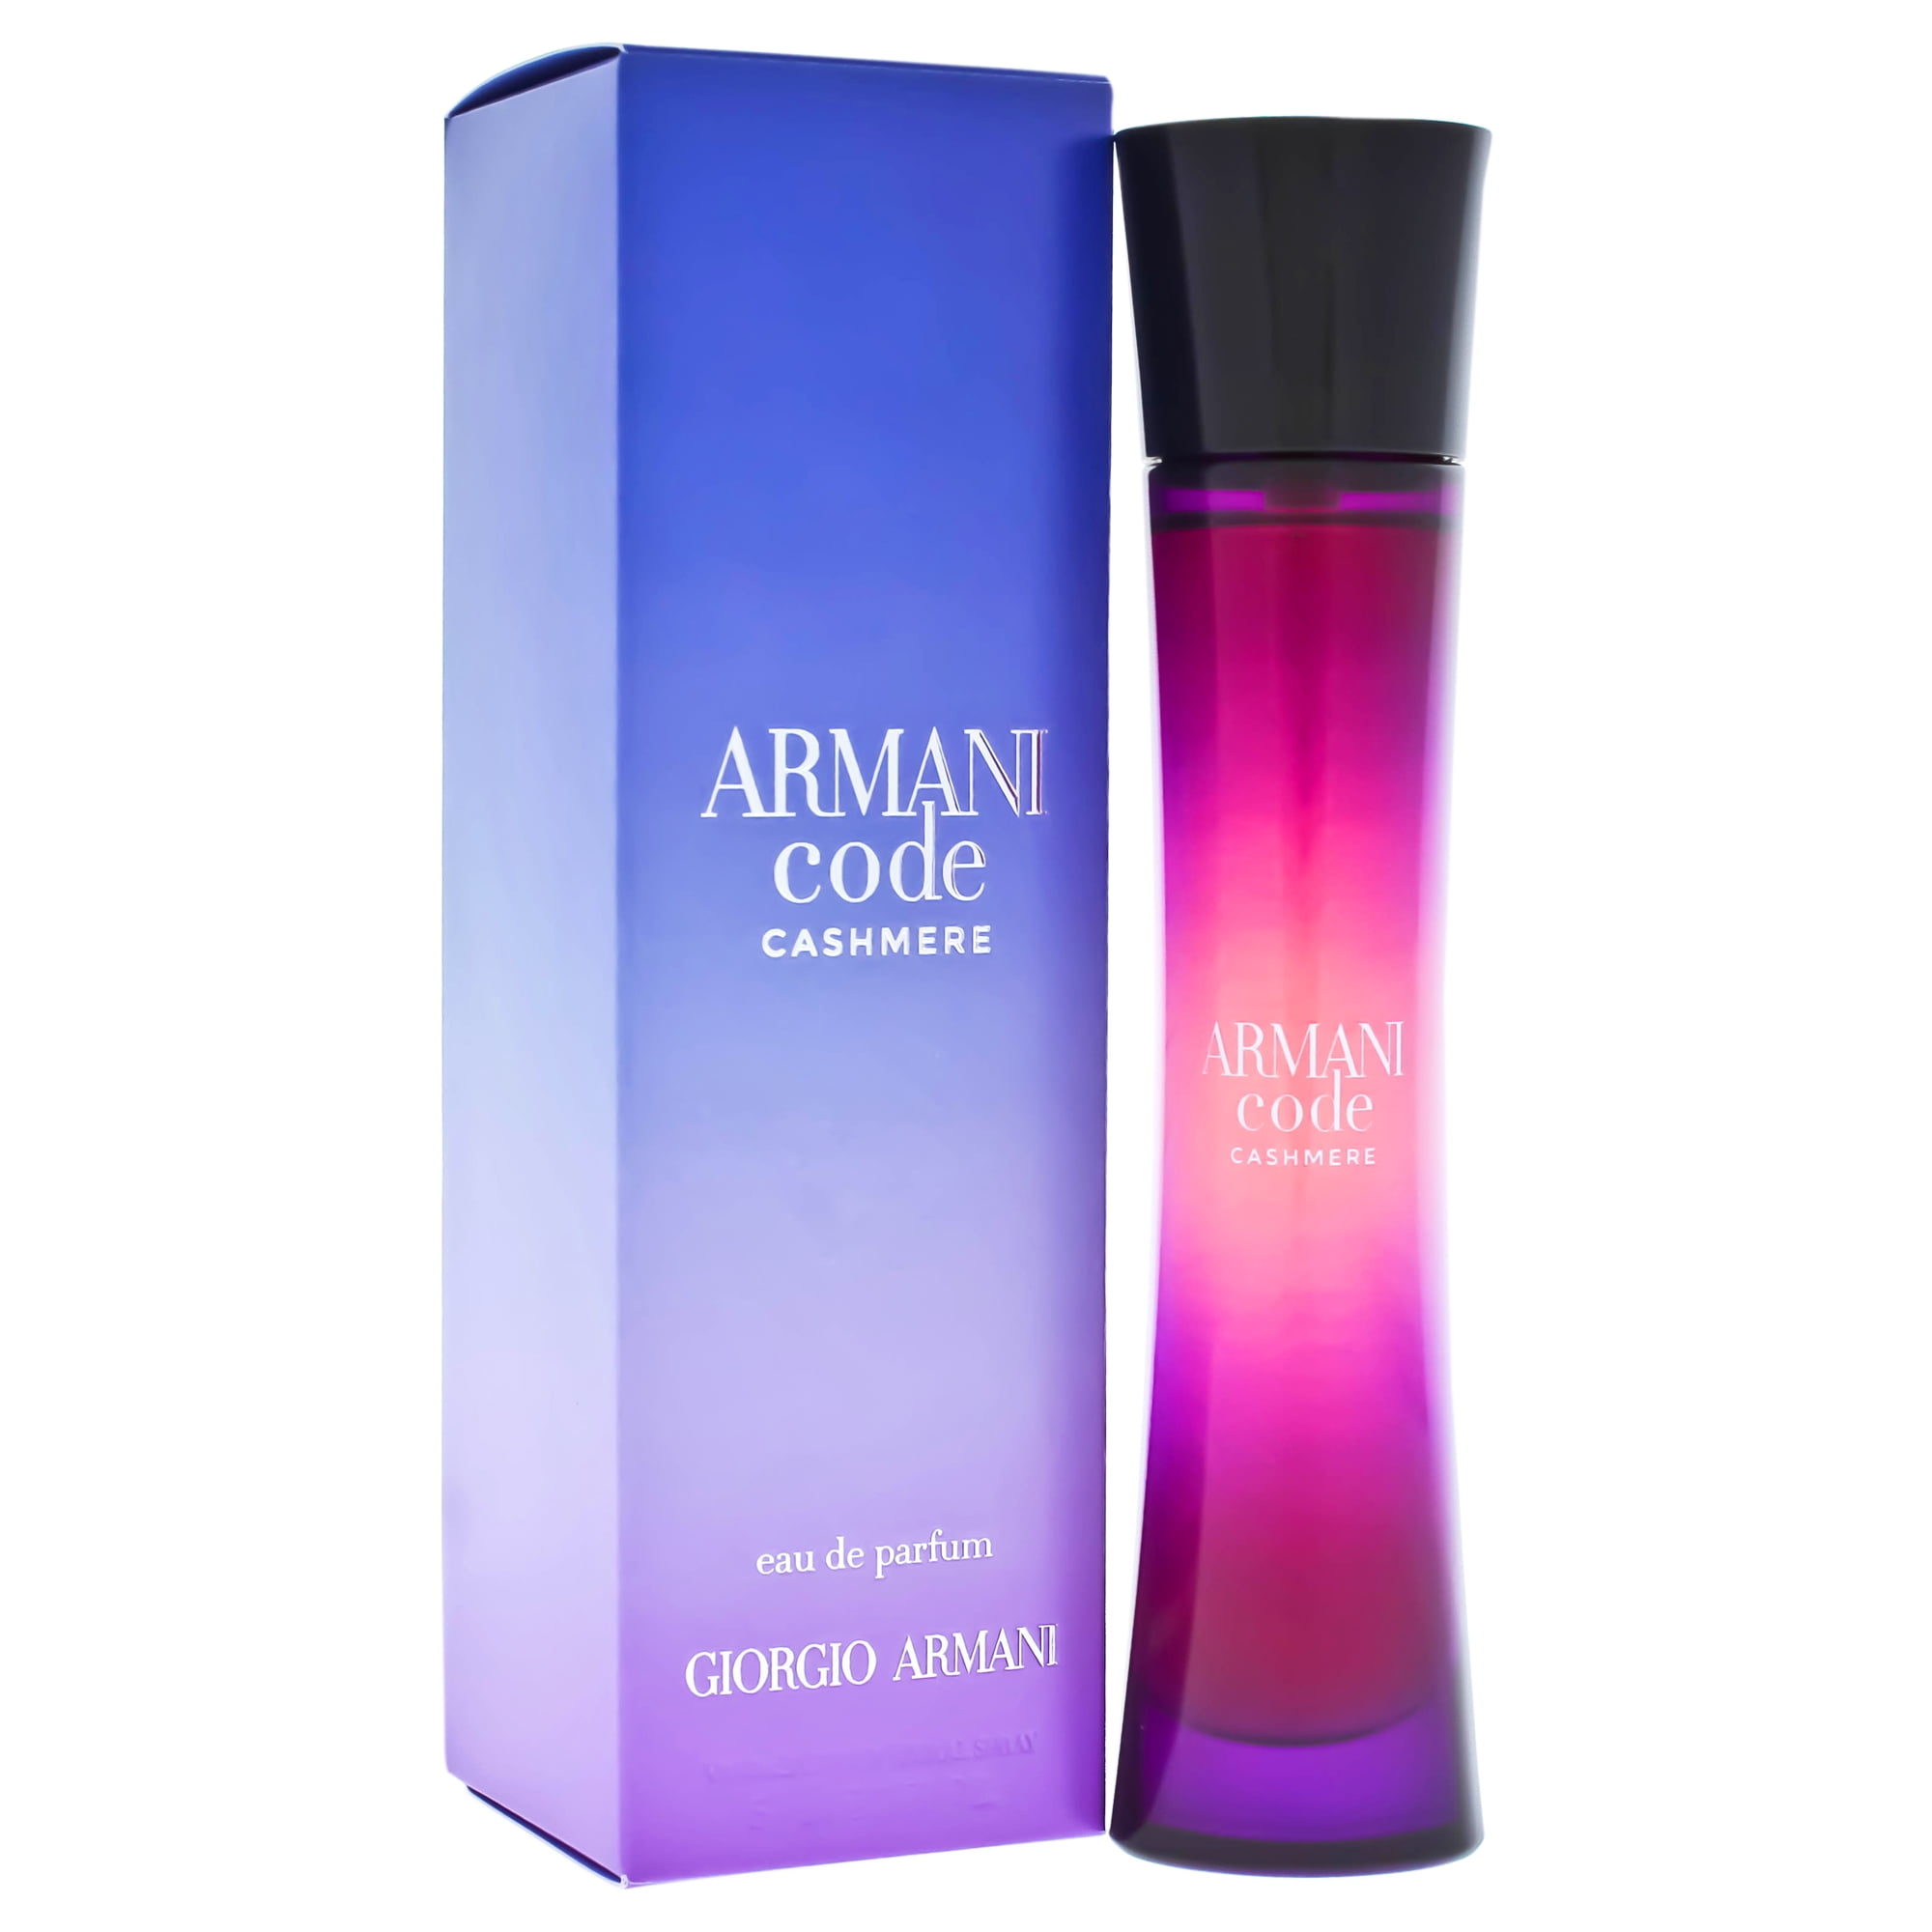 Giorgio Armani Giorgio Armani Armani Code Cashmere Eau De Parfum